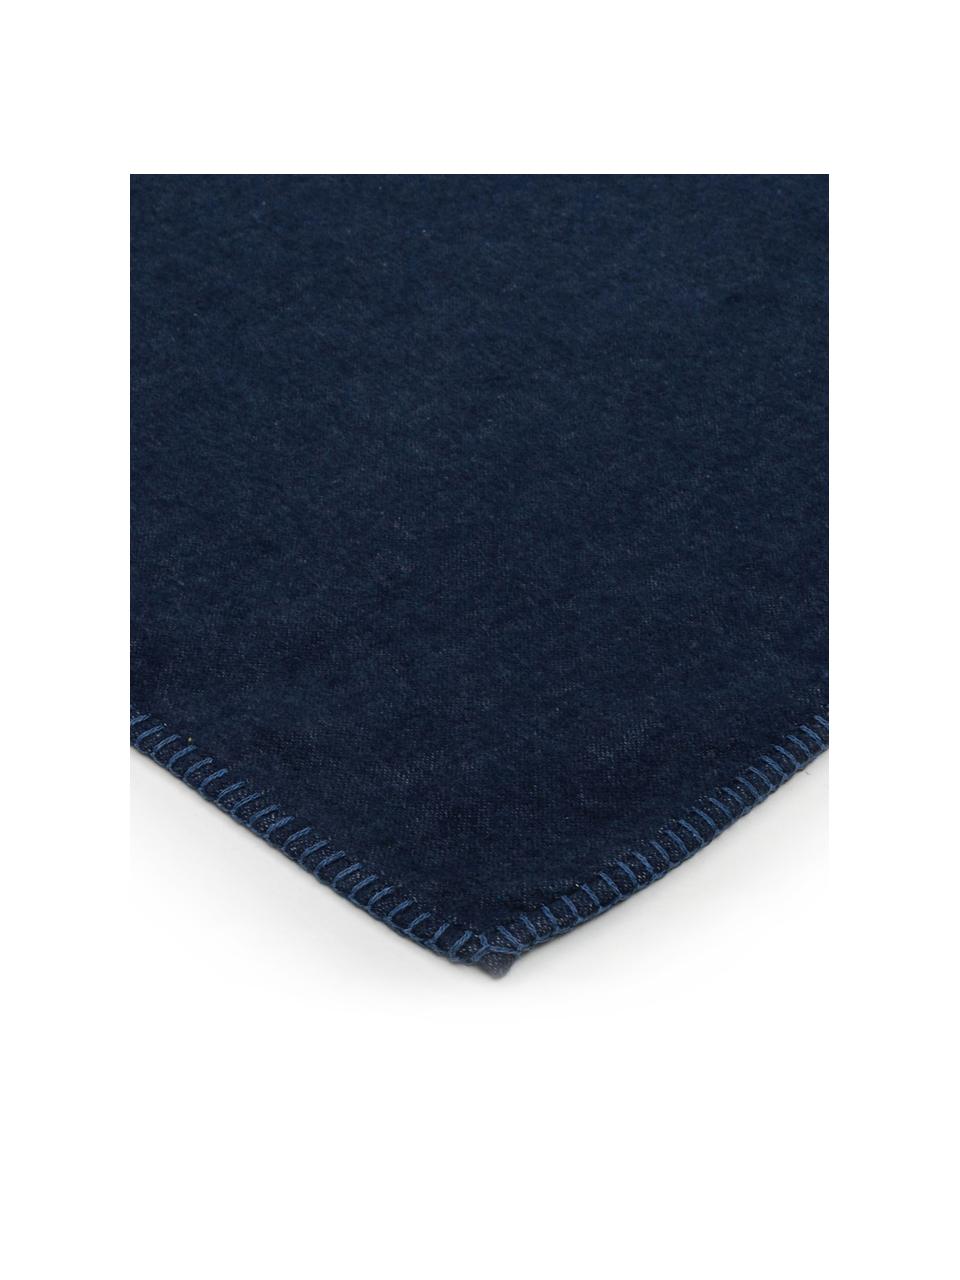 Plaid bleu marine coton doux Sylt, Bleu marine, larg. 140 x long. 200 cm